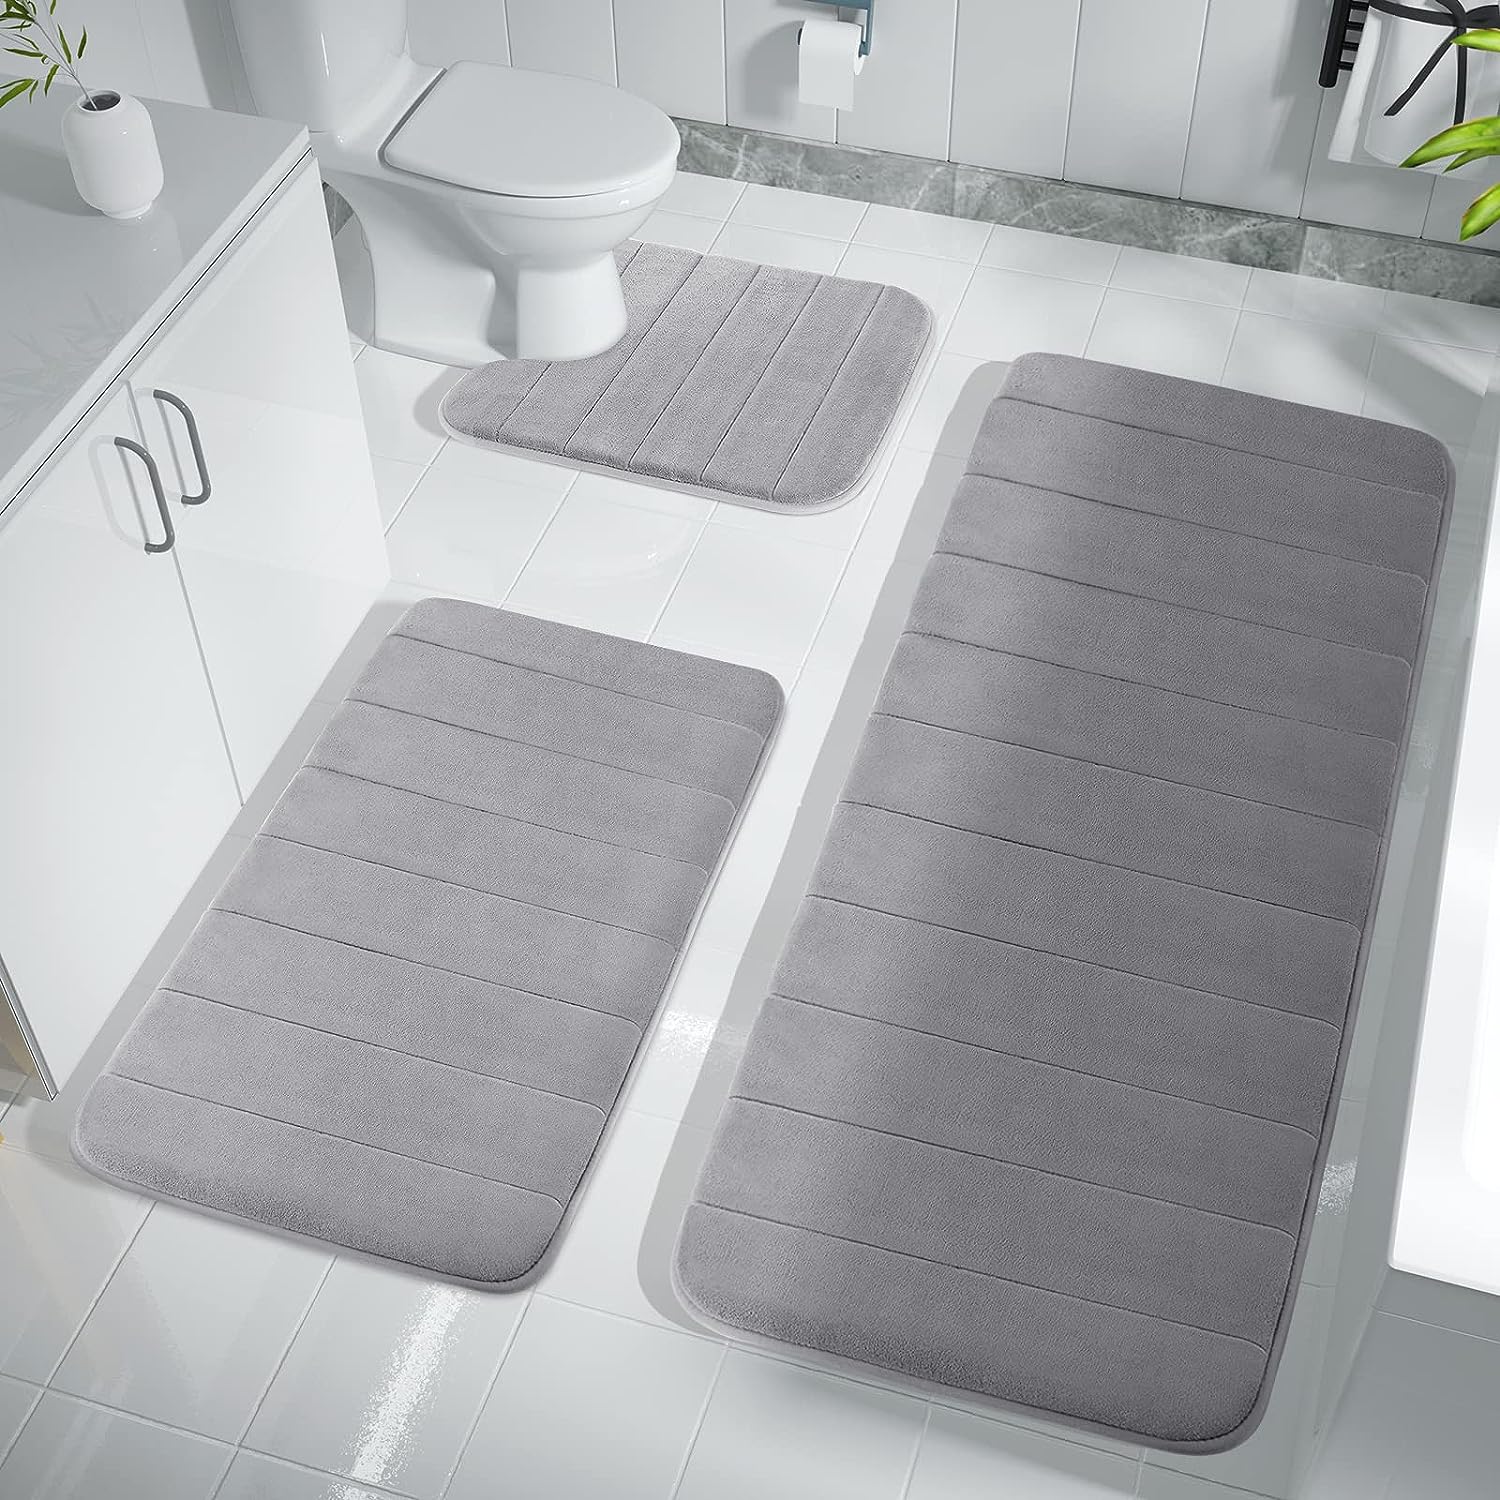 gray minimalist bathroom rug set